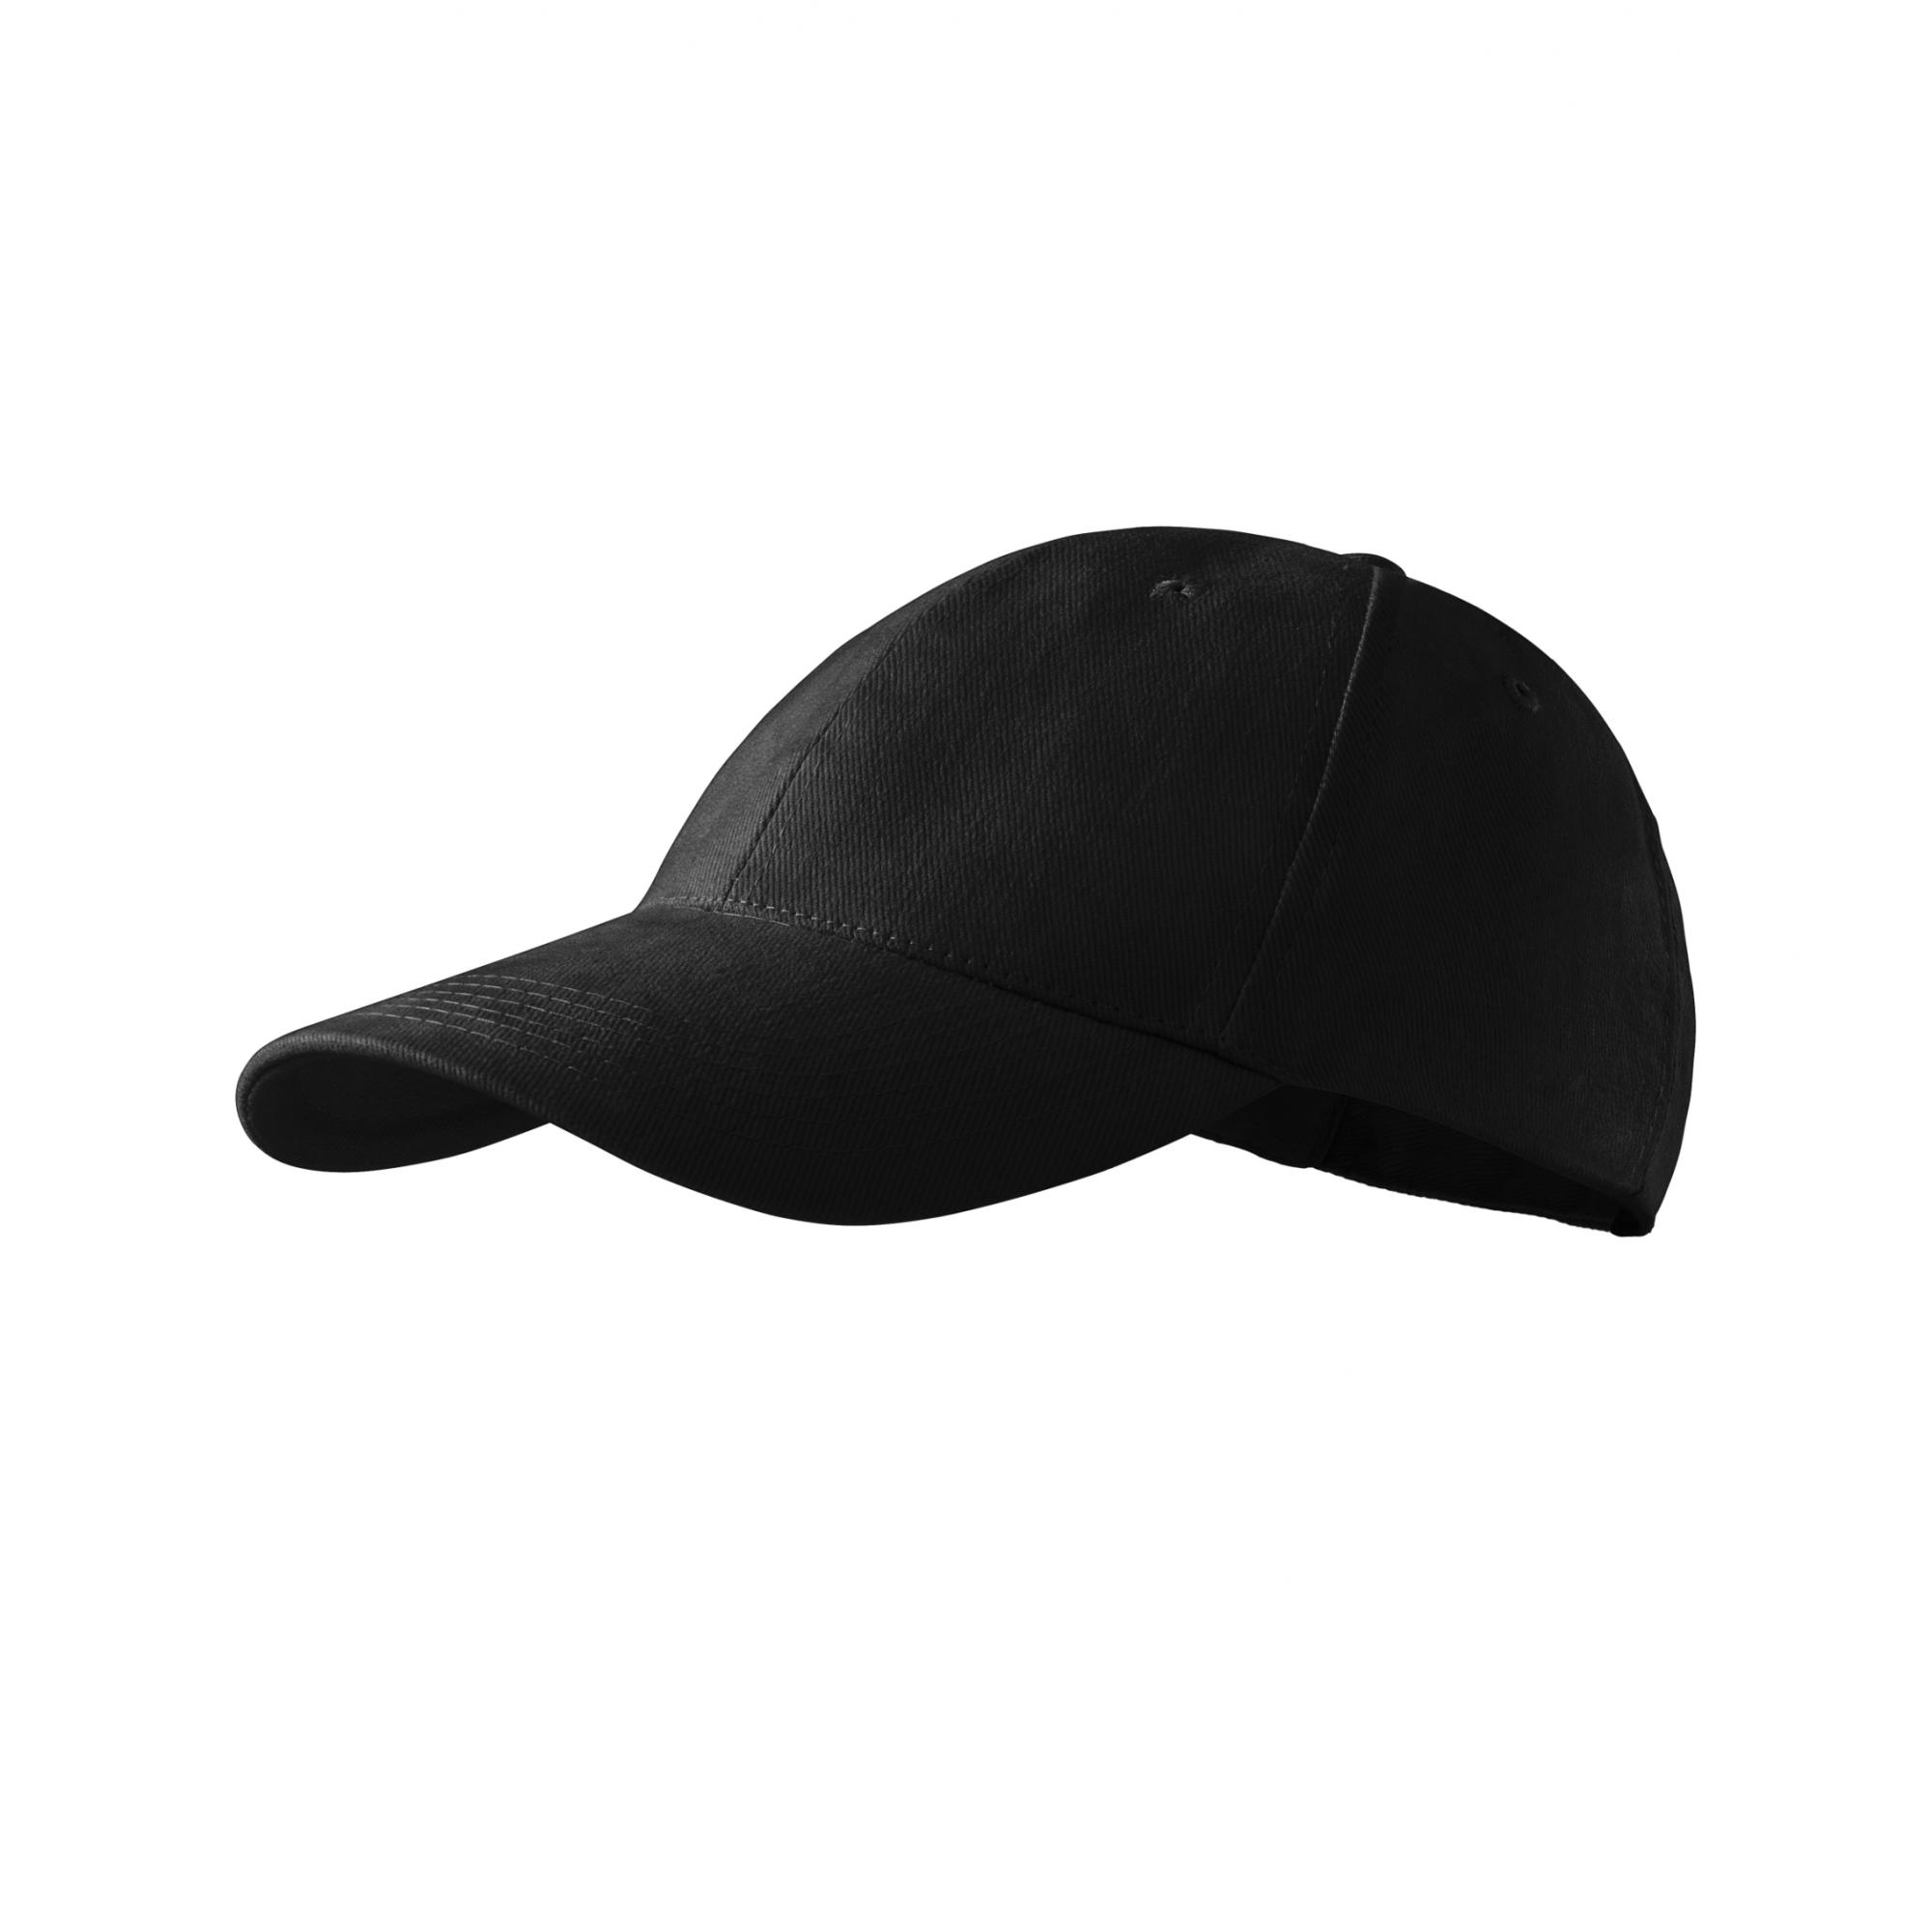 Şapcă pentru copii 6P Kids 303 Negru Marime universala